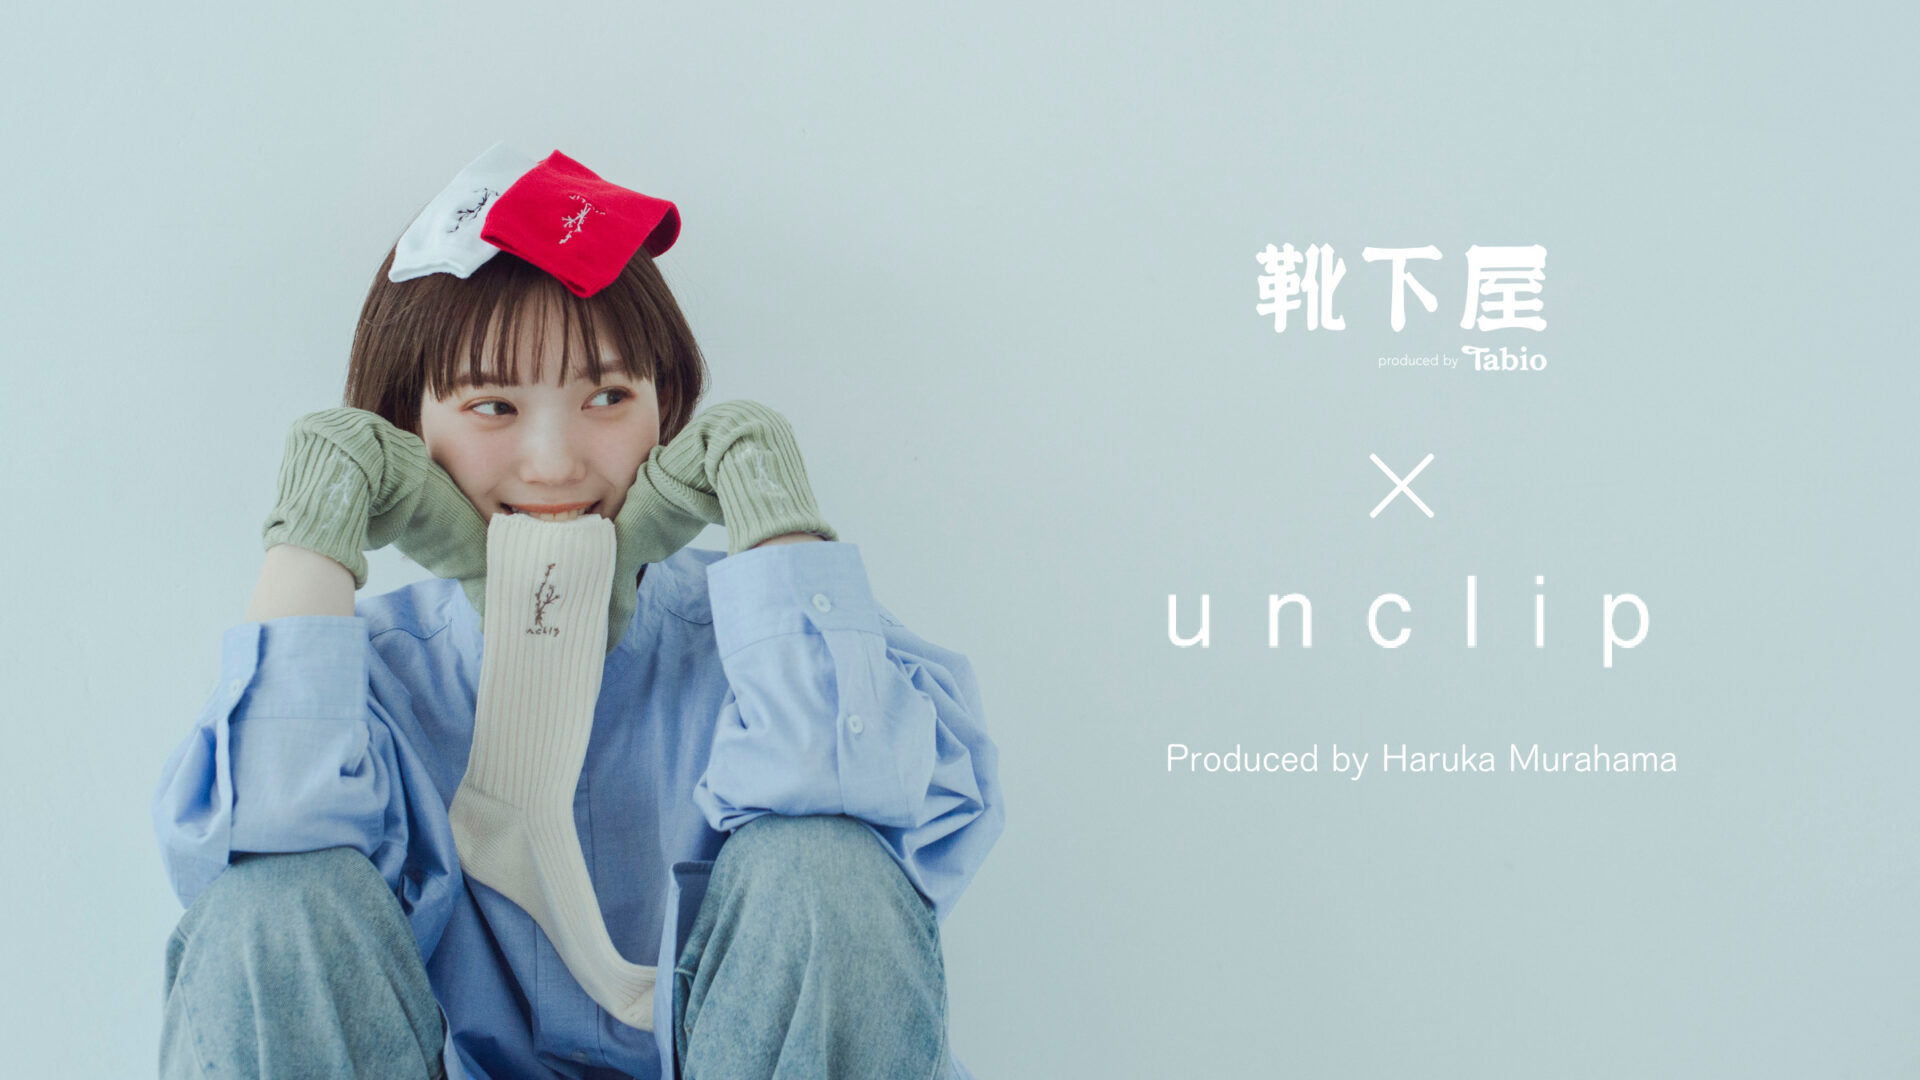 人気モデル村濱遥プロデュースのアパレルブランド「unclip」とタビオ靴下専門店「靴下屋」のコラボソックスが発売